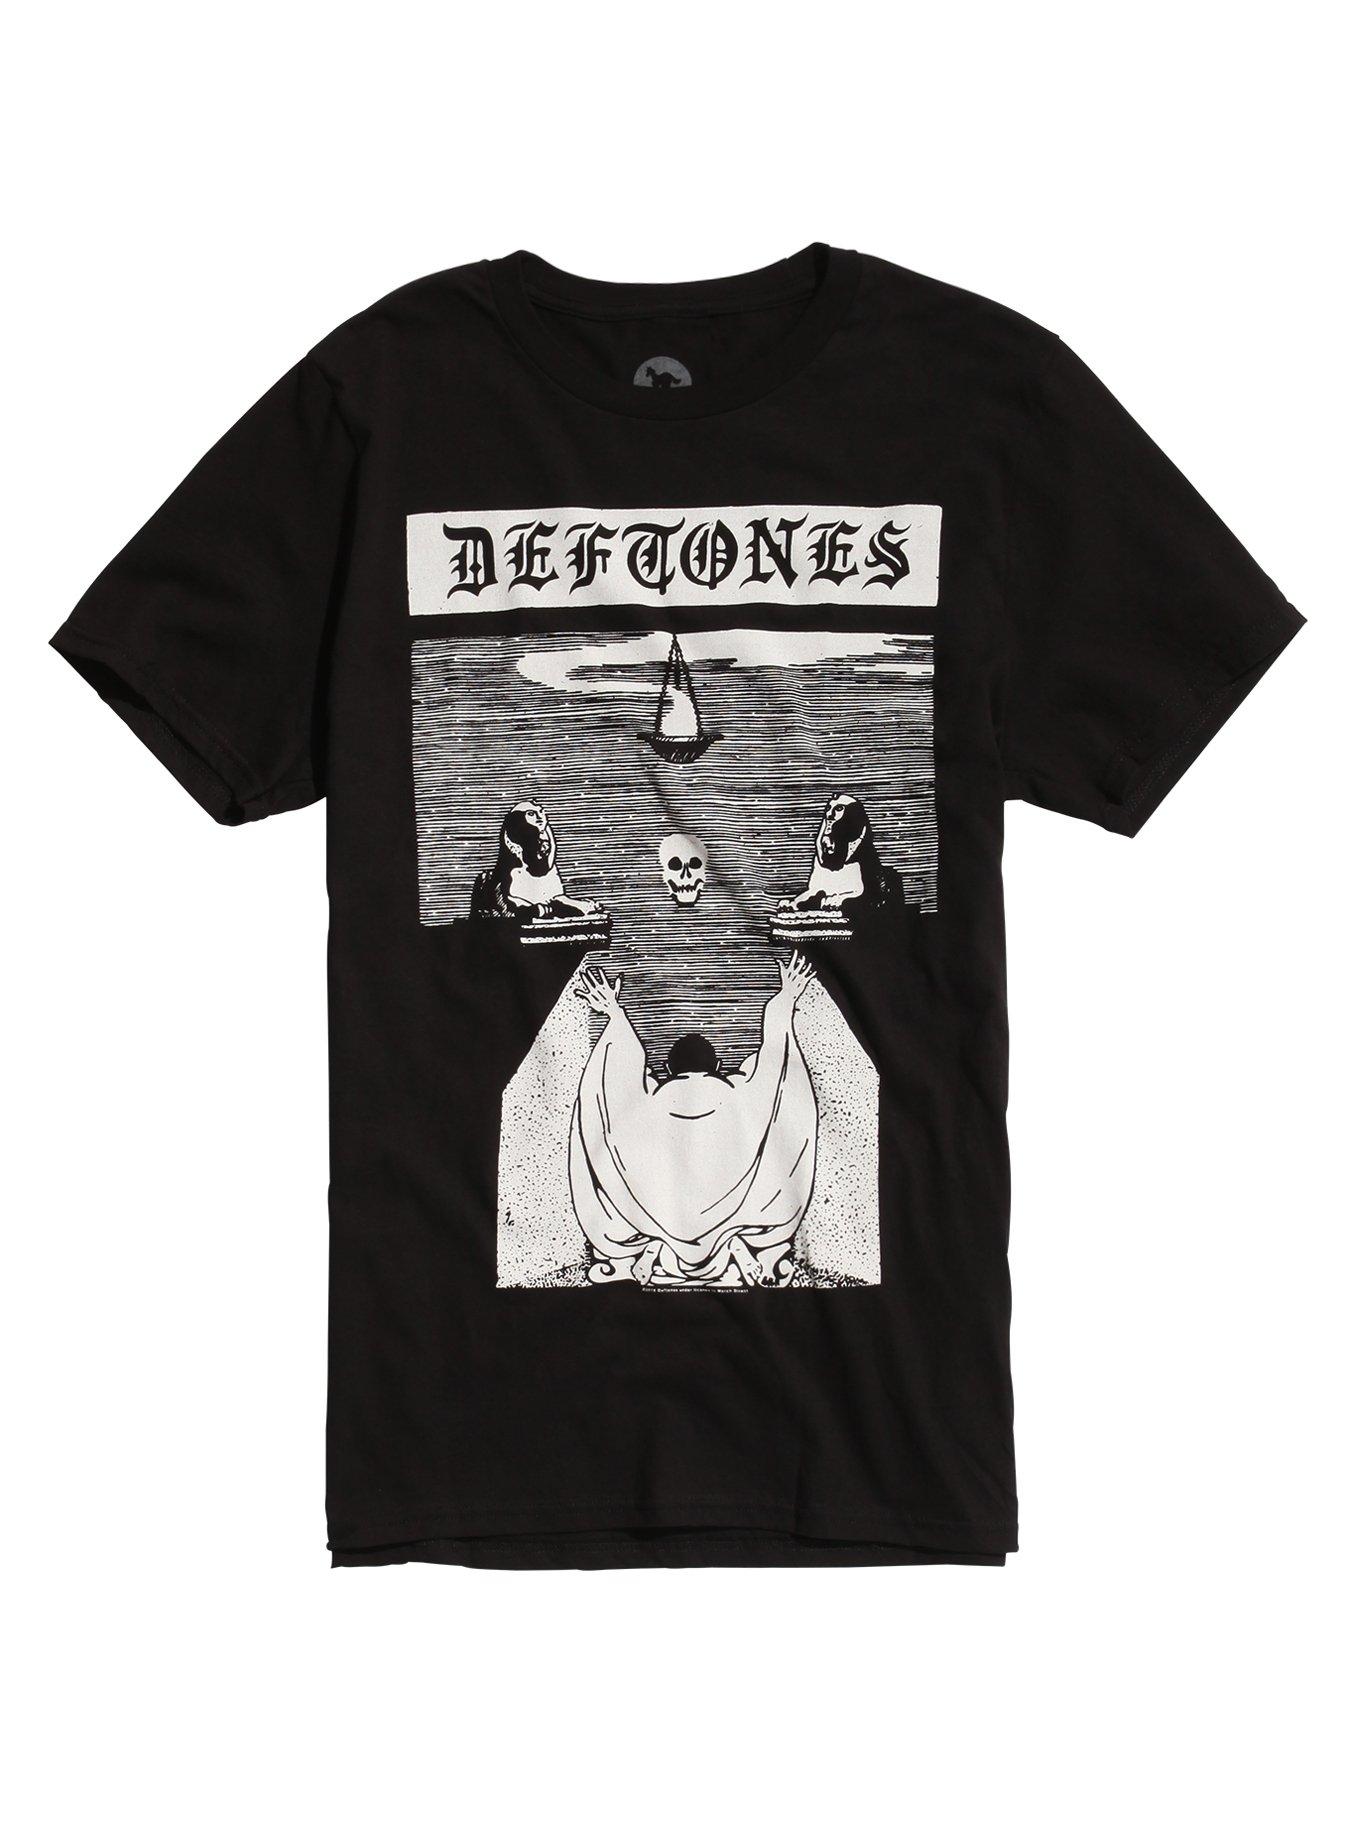 Deftones Ceremony T-Shirt, BLACK, hi-res